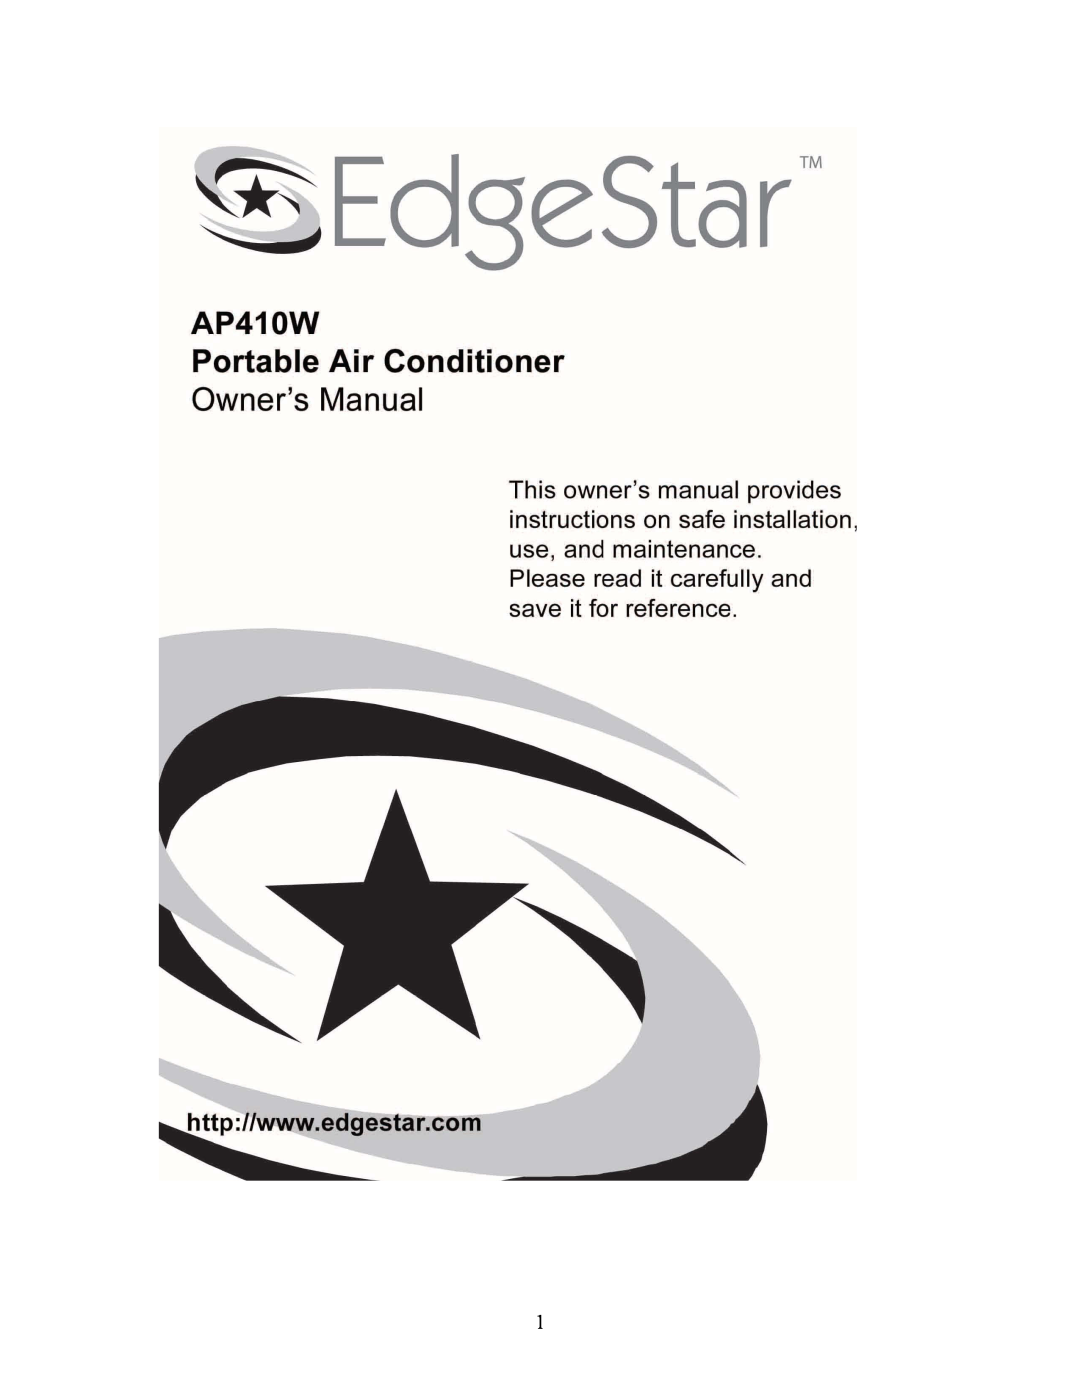 EdgeStar AP410W manual 